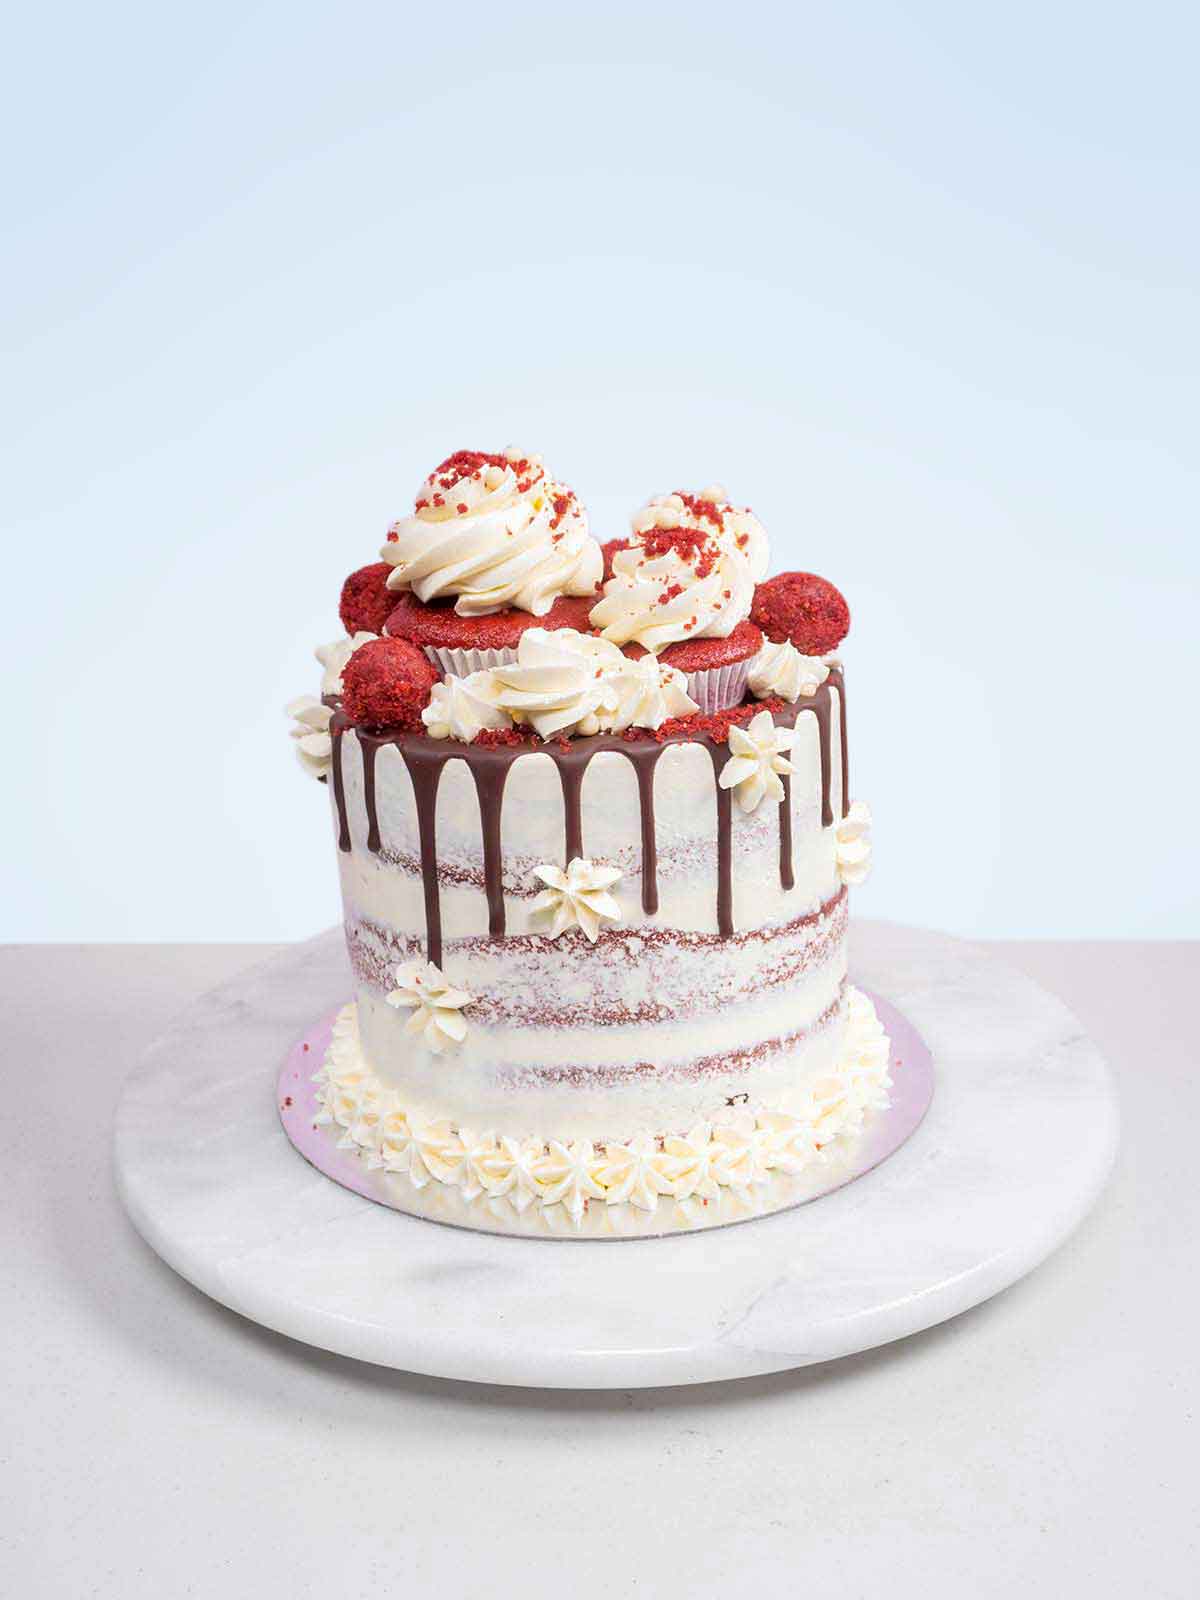 How to Decorate a Cake - BettyCrocker.com